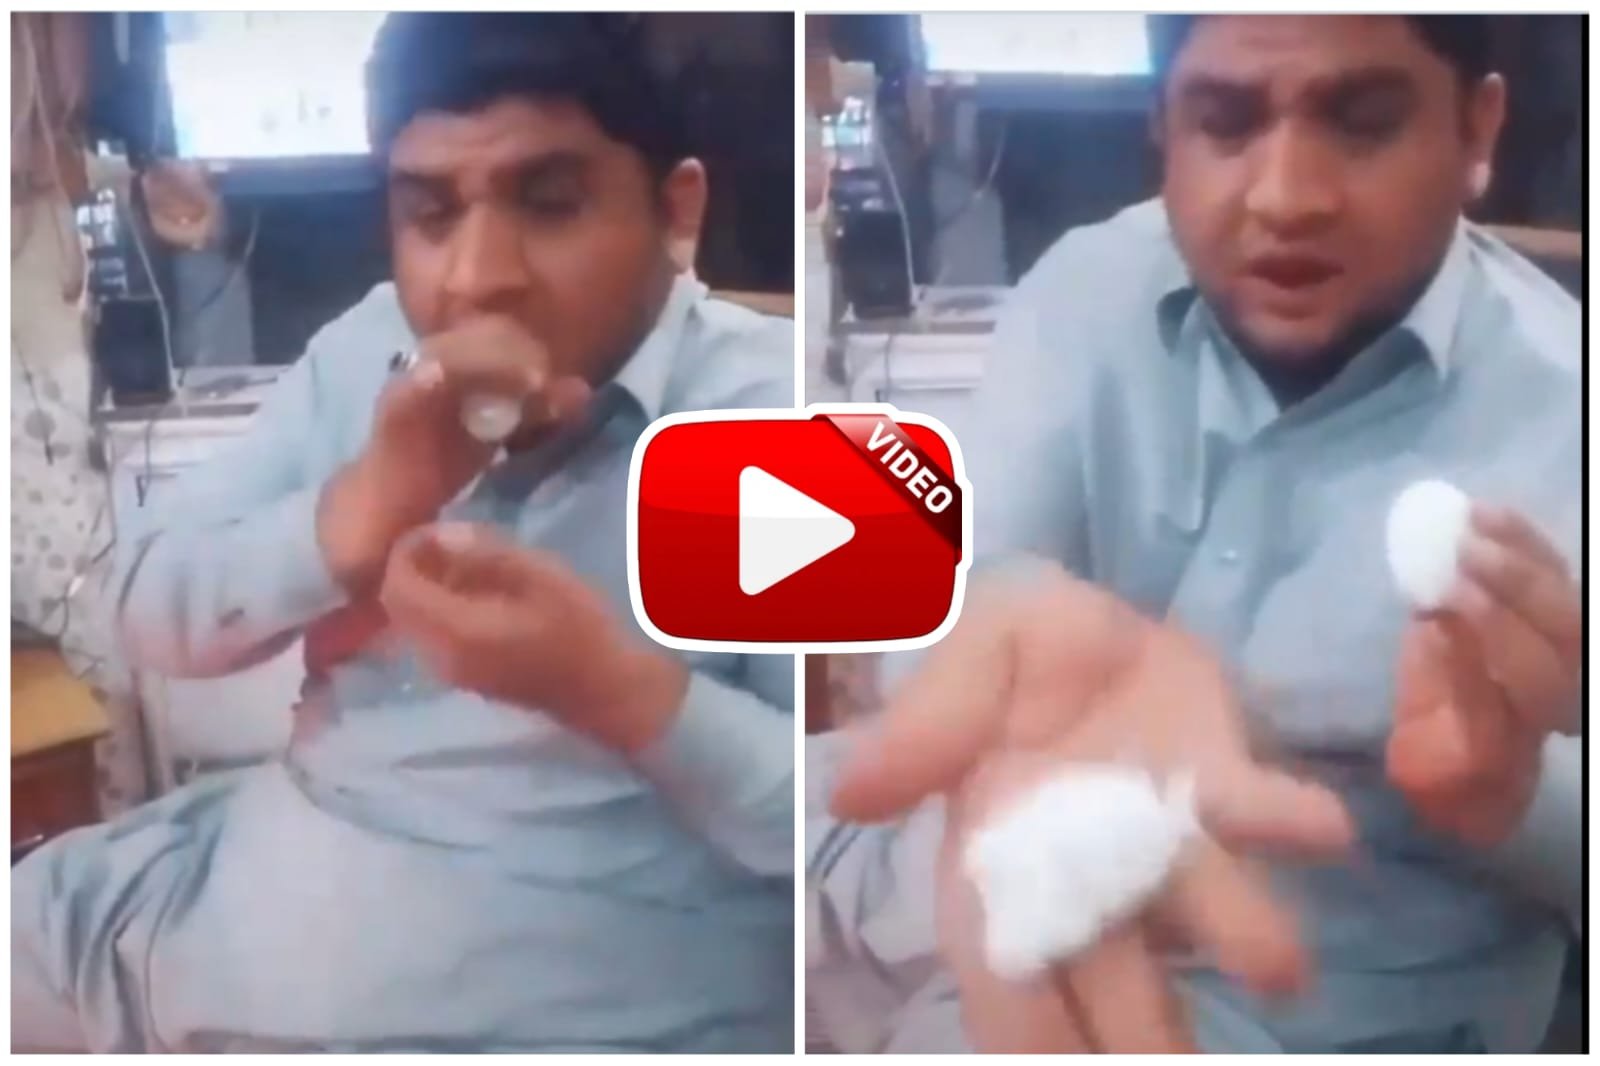 Pakistani Jugaad - Trick to peel eggs easily goes viral